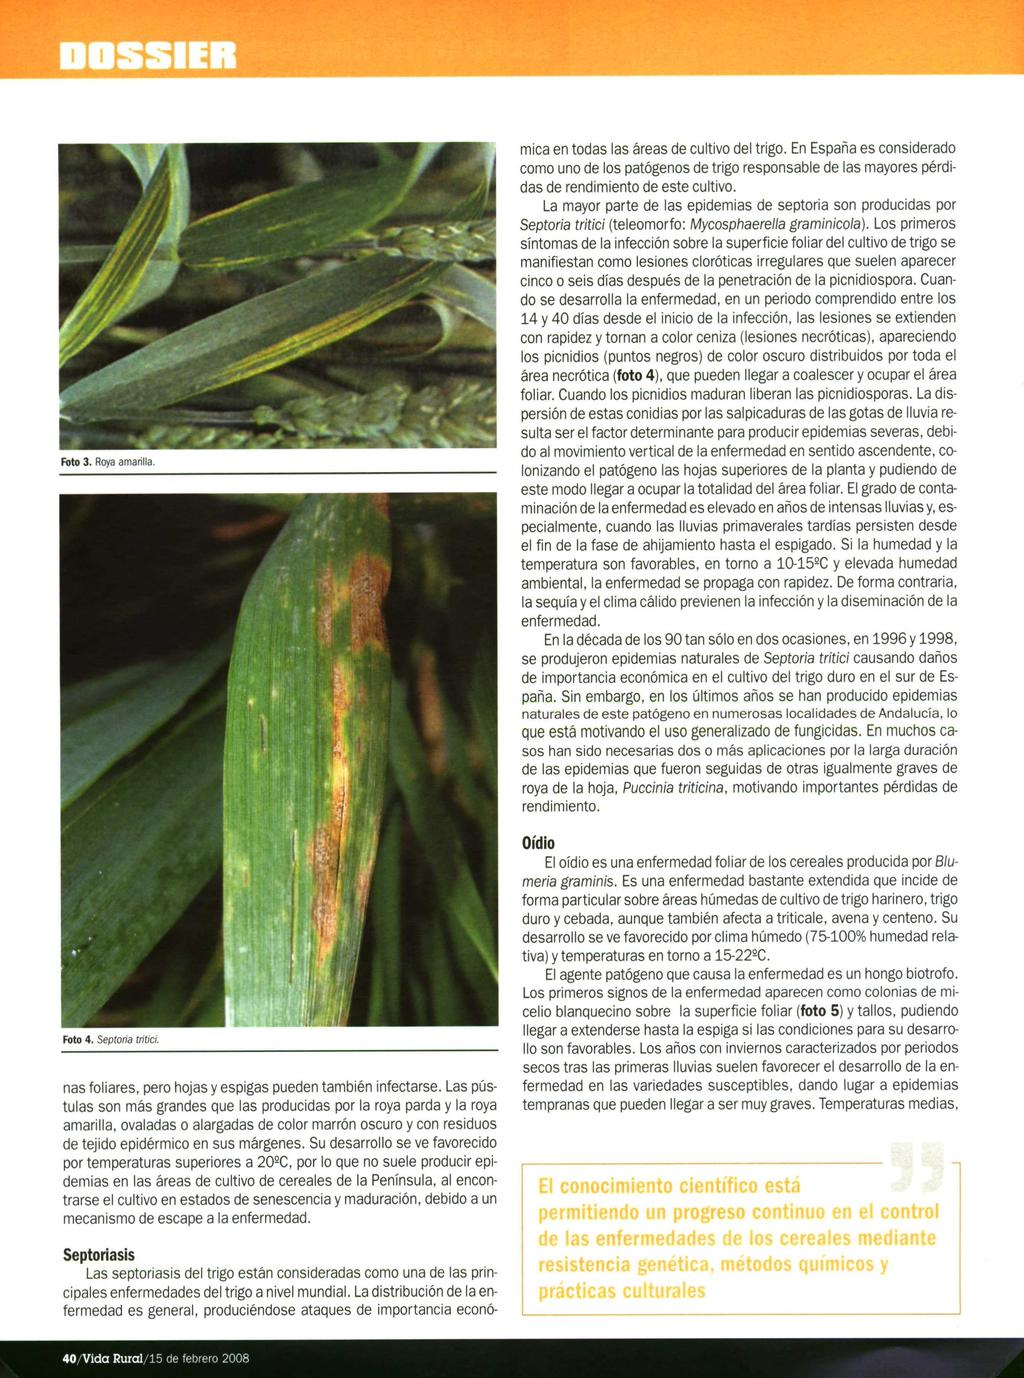 DOSSIER Foto 3. Roya amarilla. Septoriasis Las septoriasis del trigo están consideradas como una de las principales enfermedades del trigo a nivel mundial.